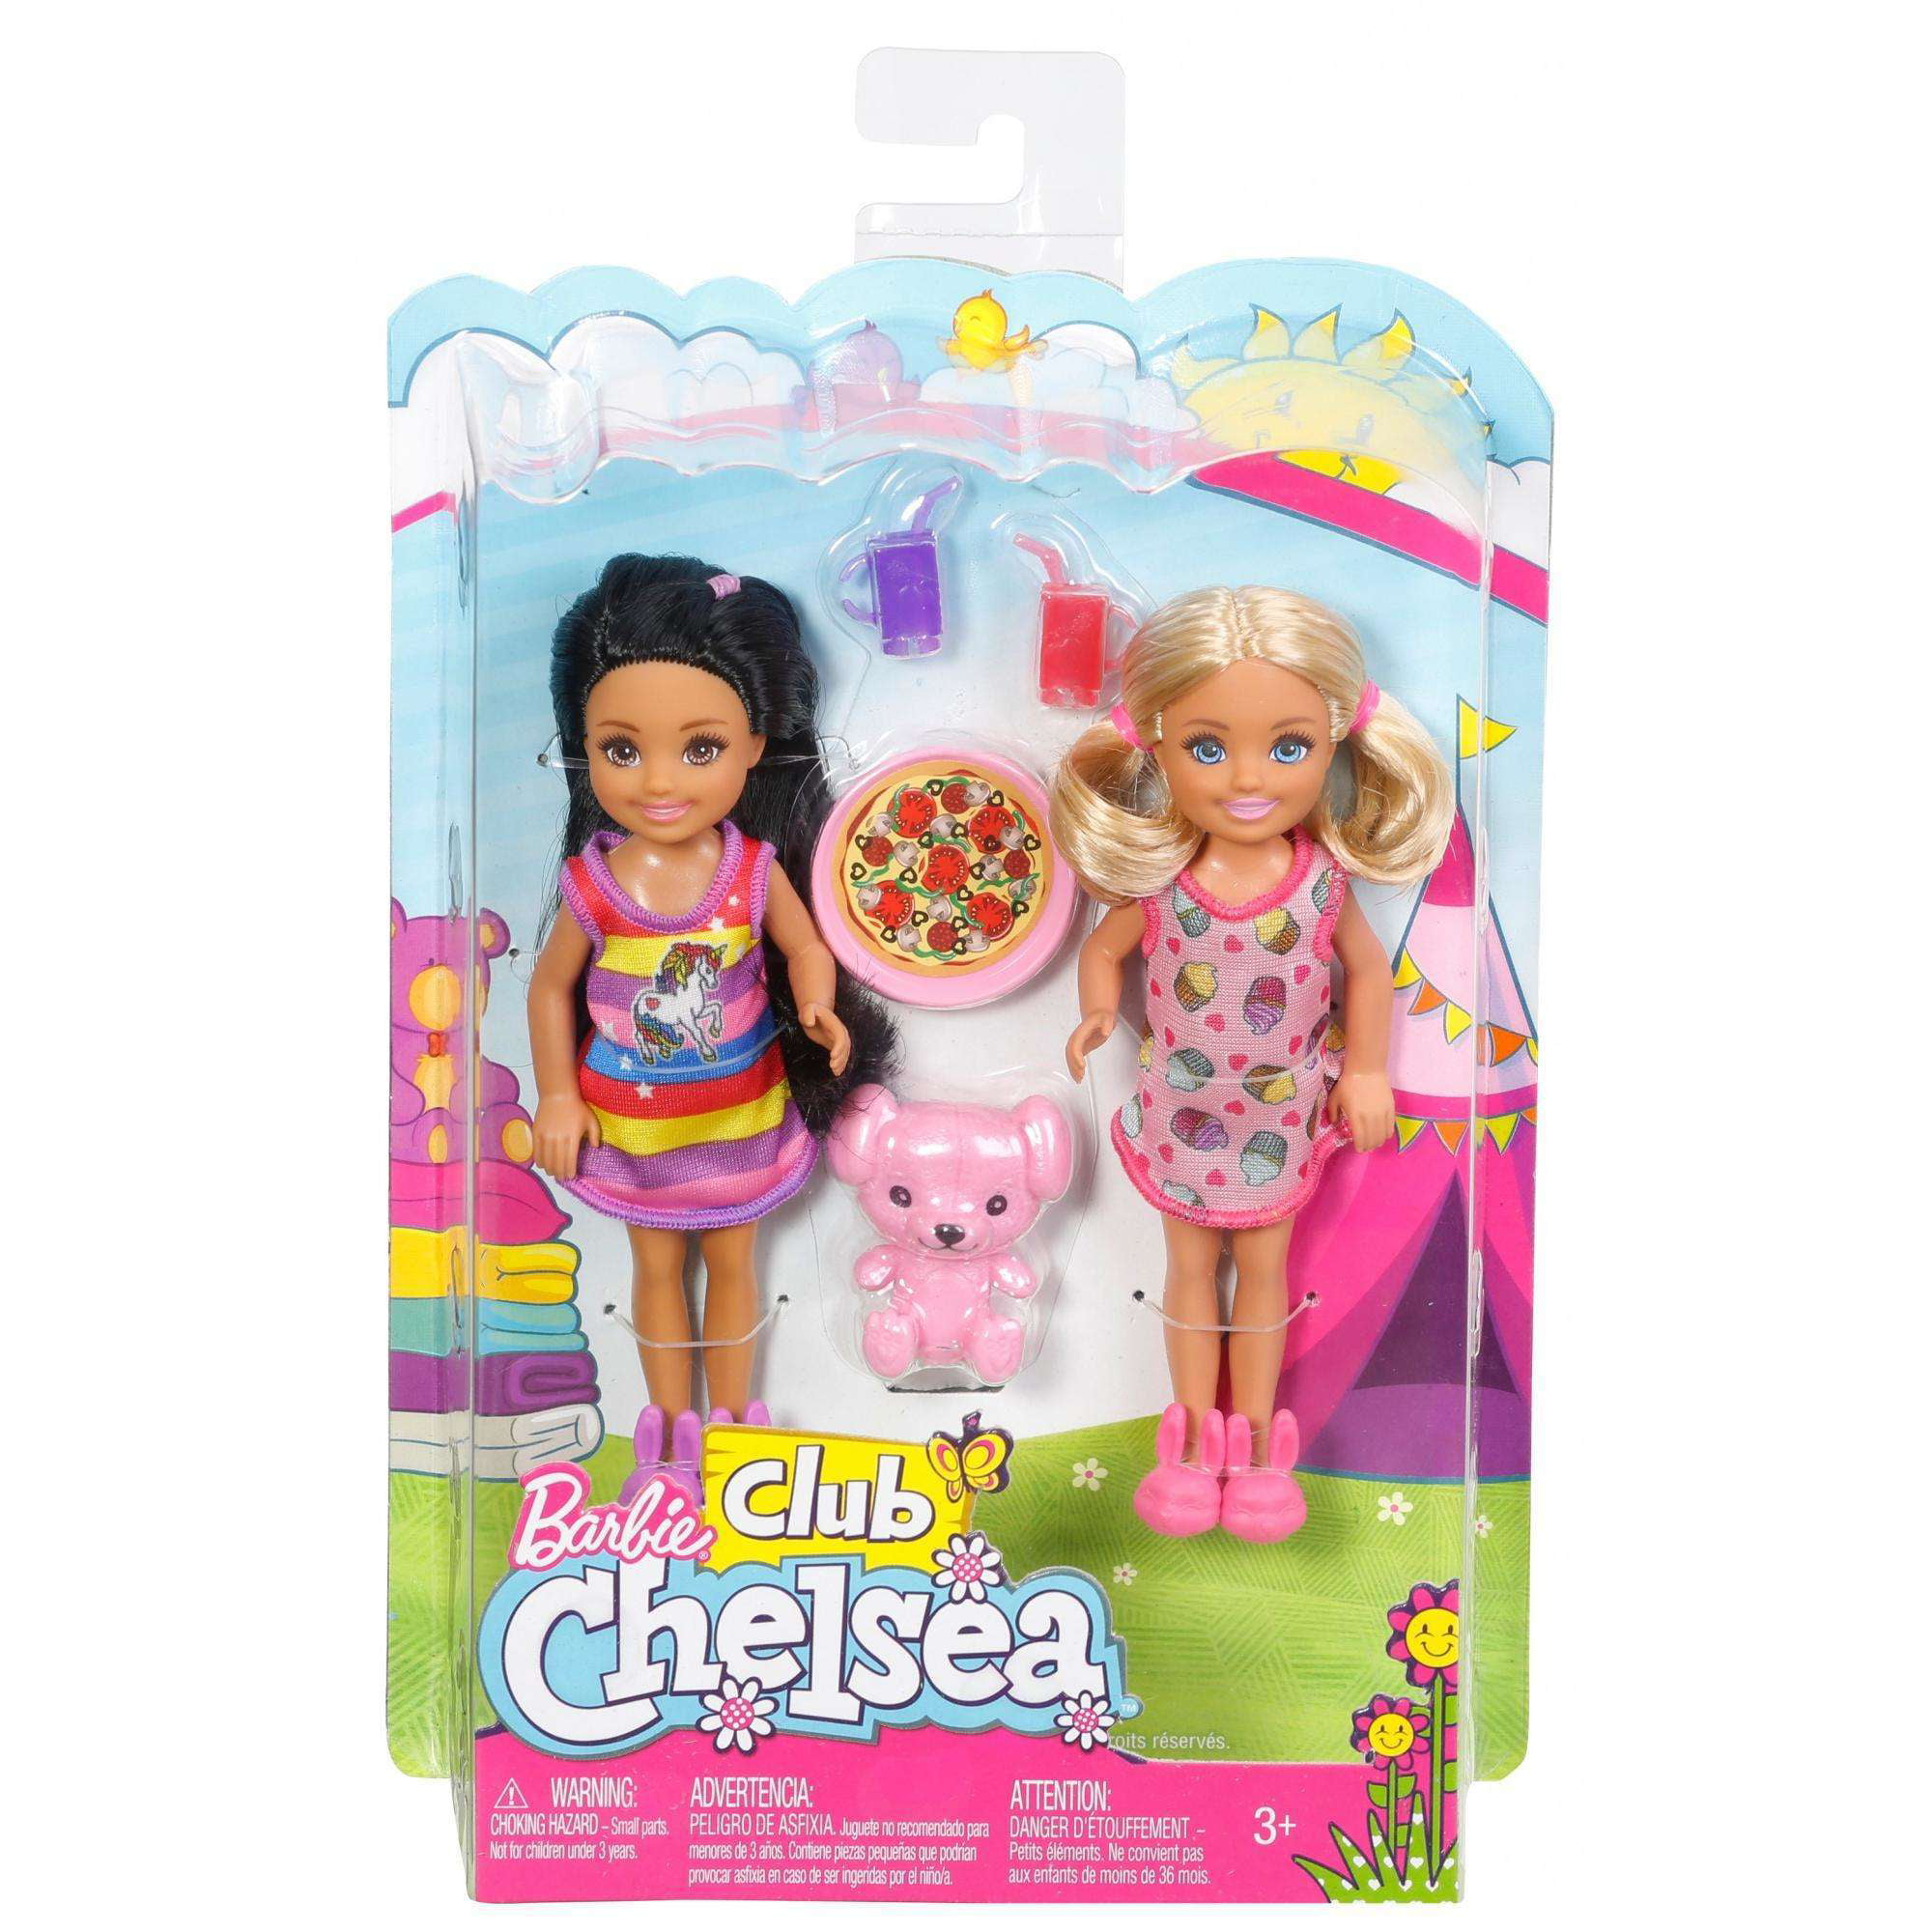 Barbie Club Chelsea Slumber Party Pack 